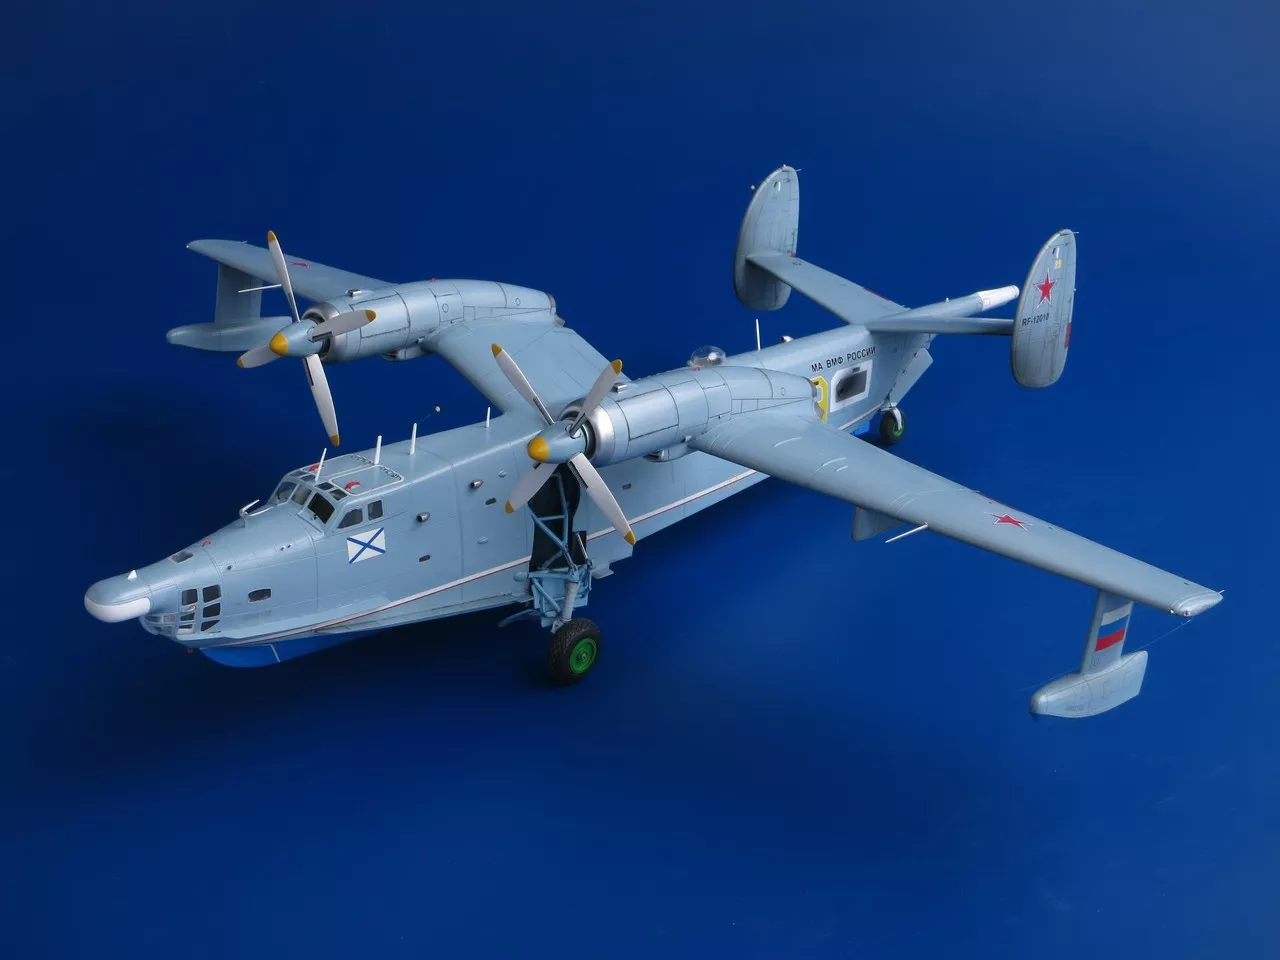 Поисково-спасательный самолет Бериев Бе-12ПС